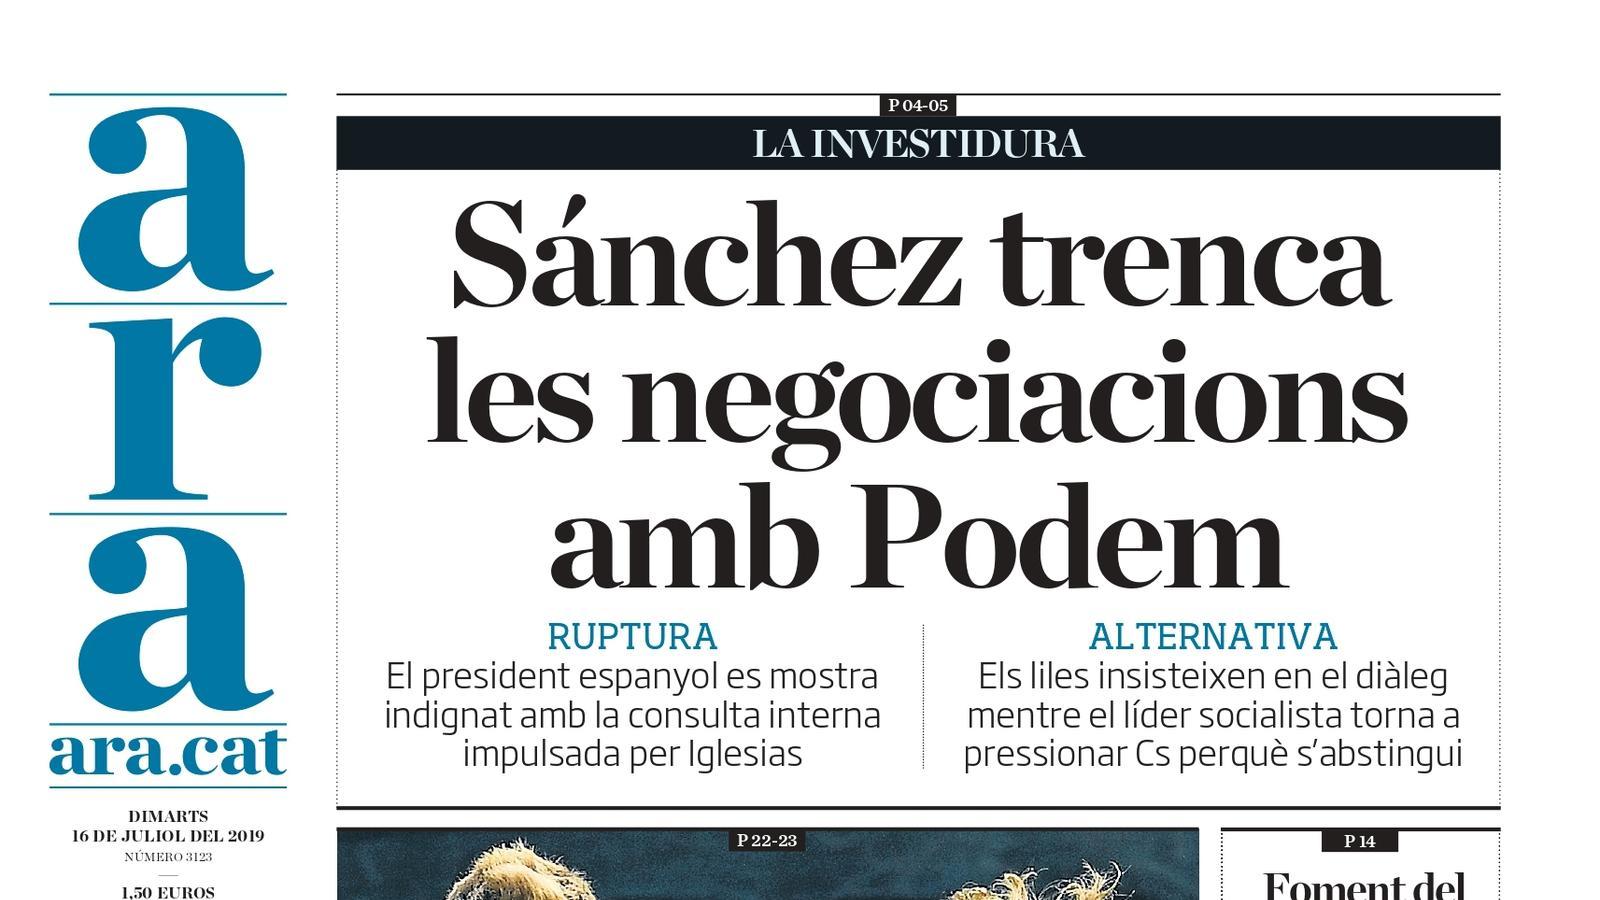 "Sánchez trenca les negociacions amb Podem", la portada de l'ARA